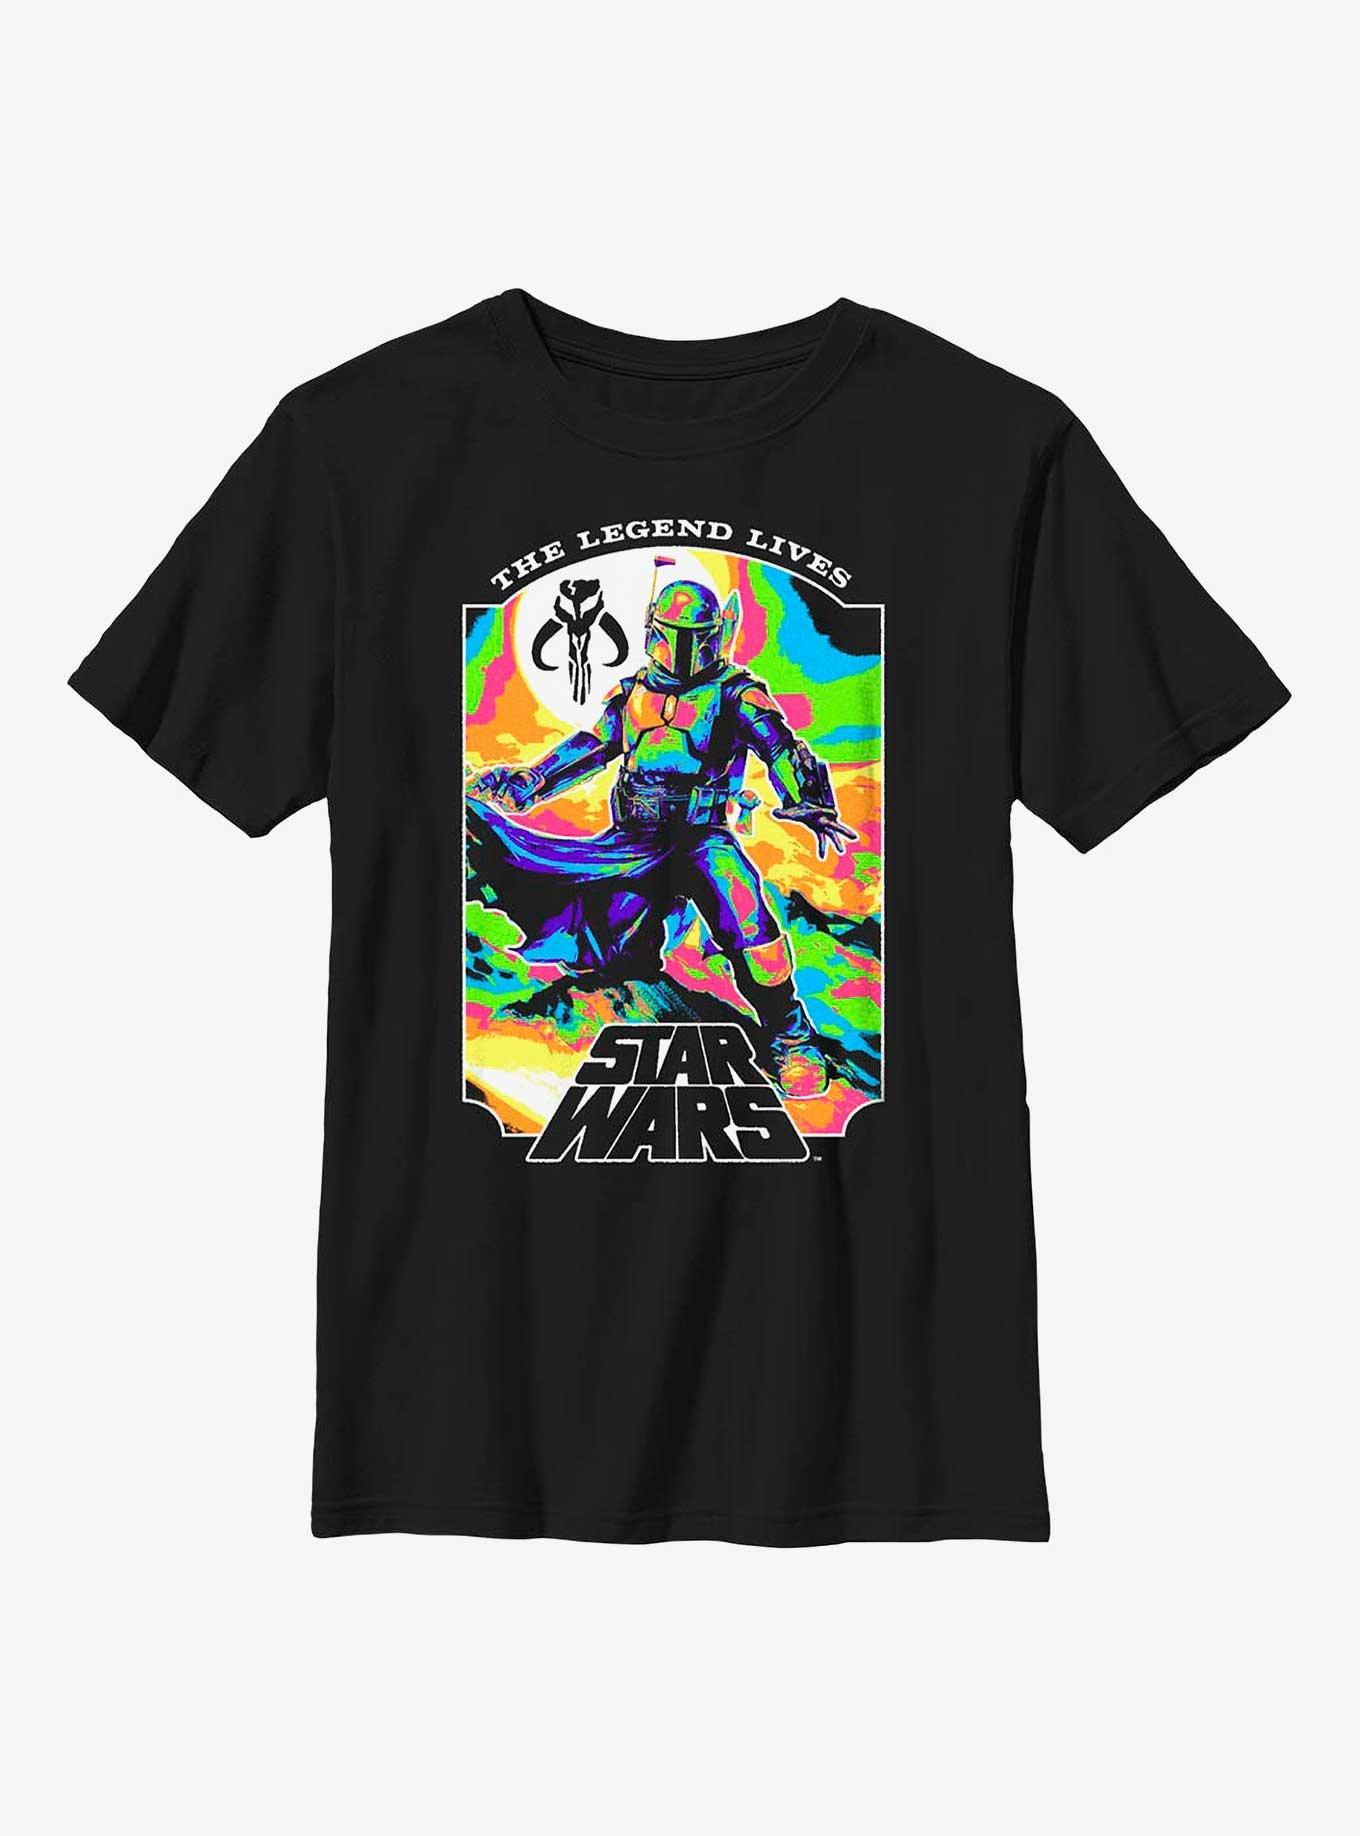 Star Wars Living Legend Youth T-Shirt, BLACK, hi-res